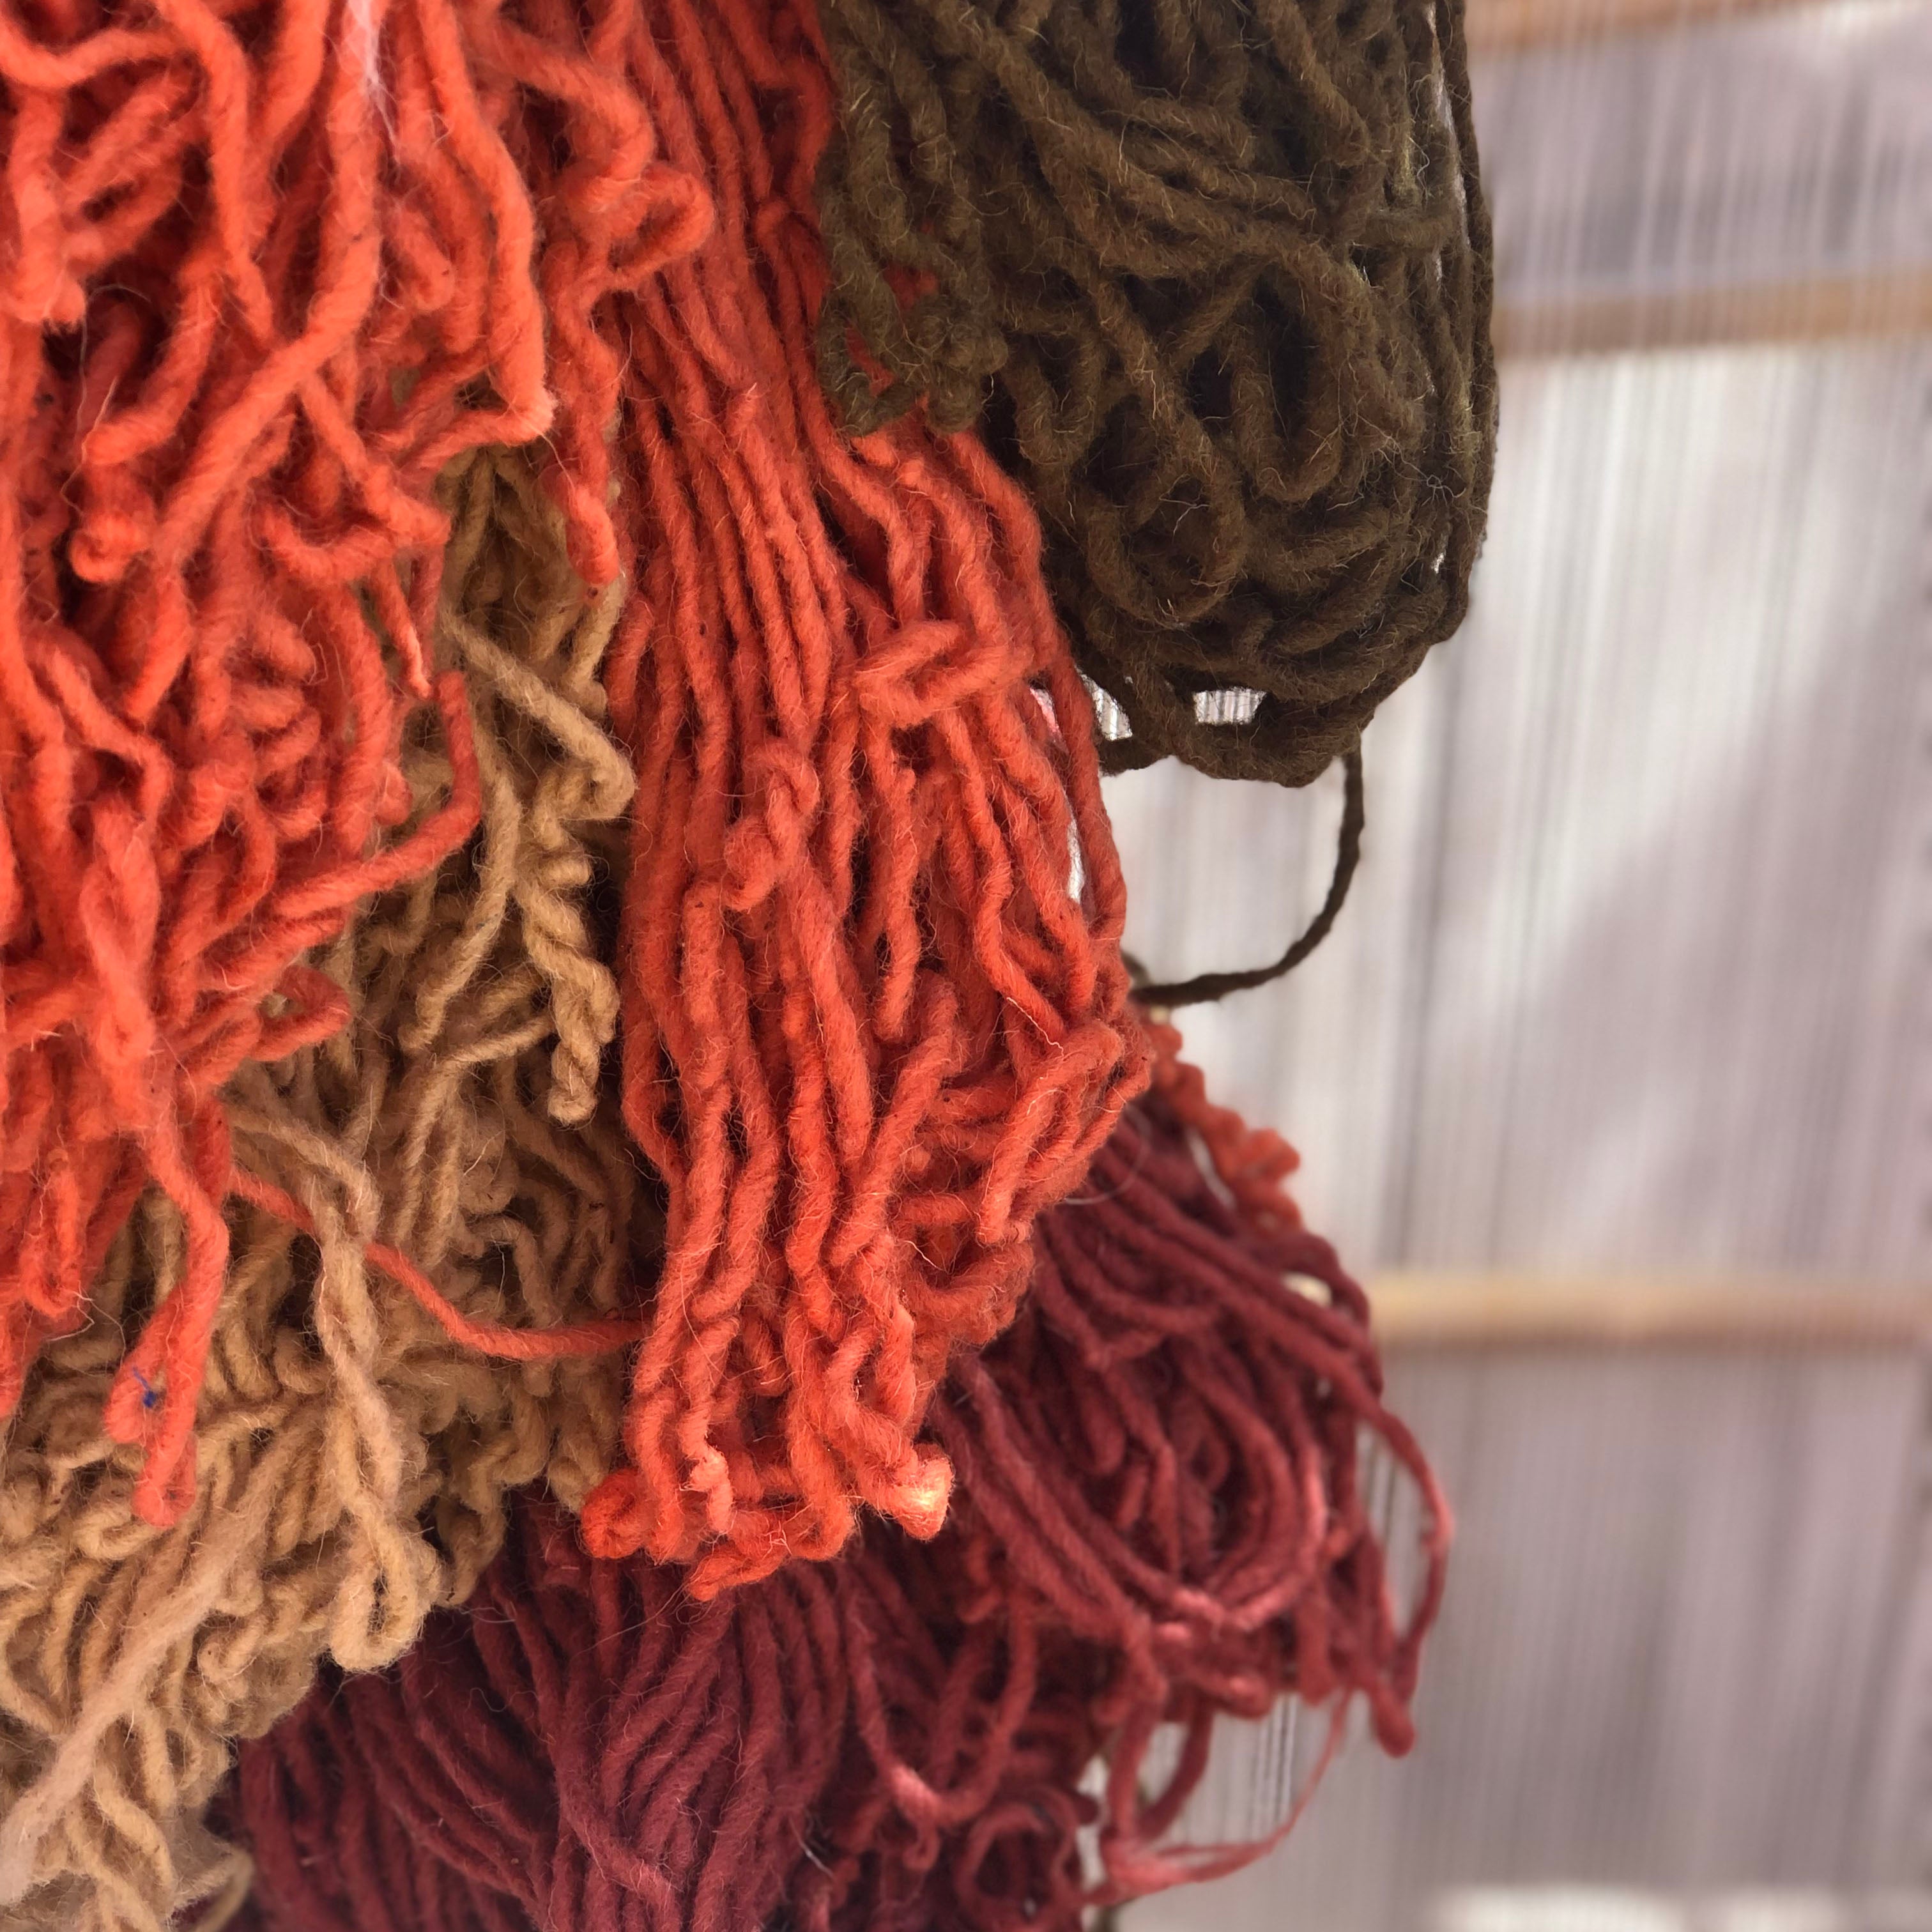 Wool used by Moroccan carpet weavers